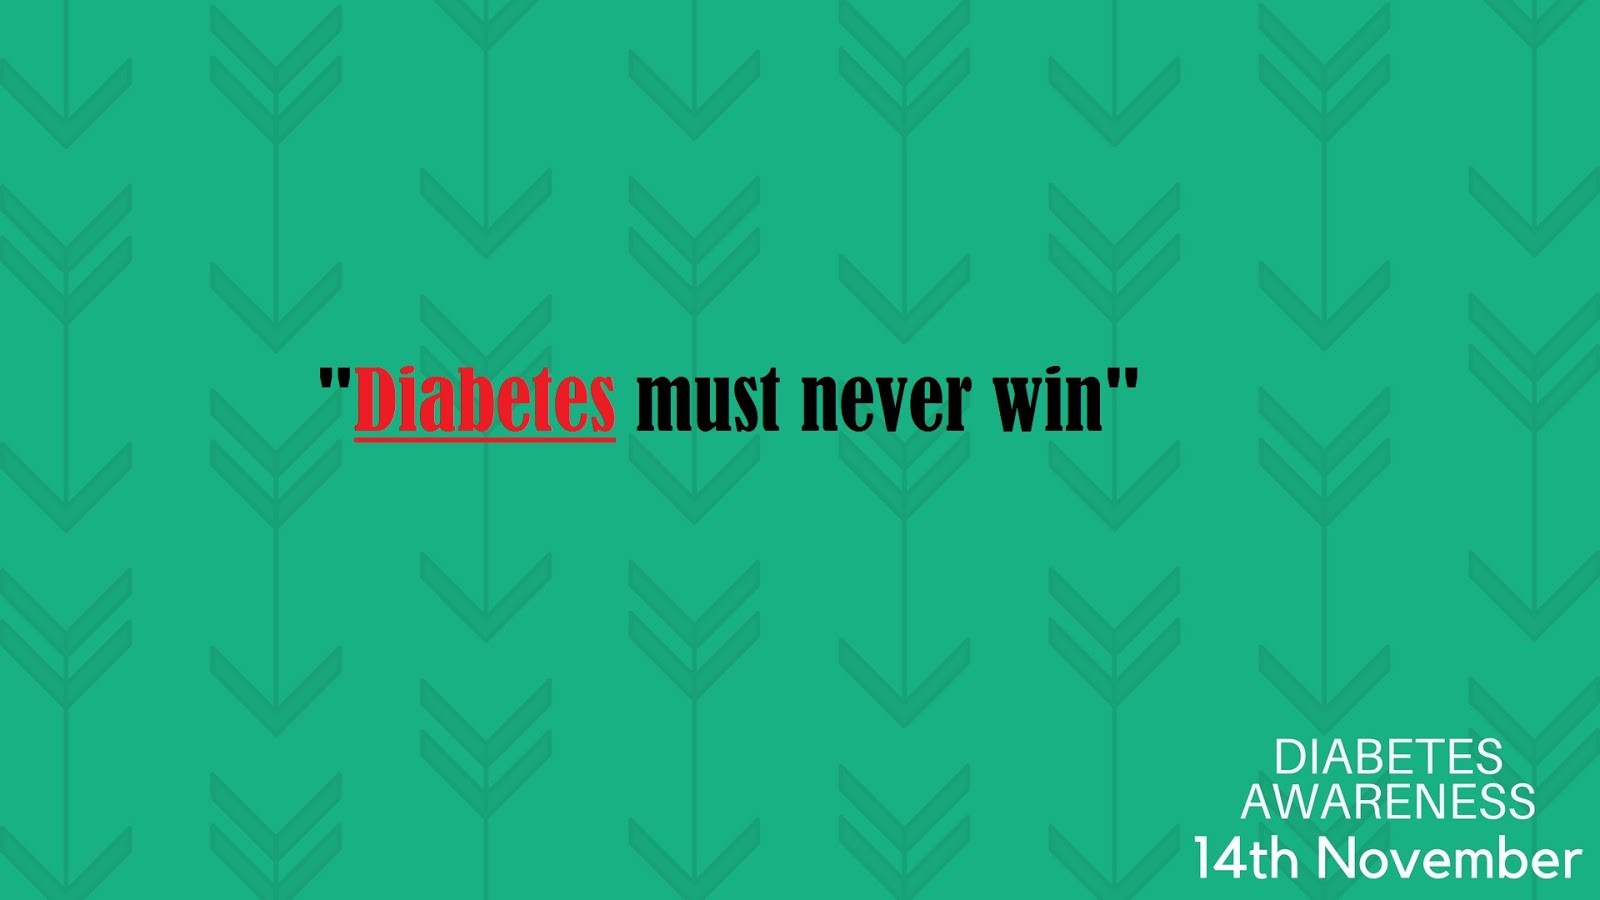 diabetes slogans